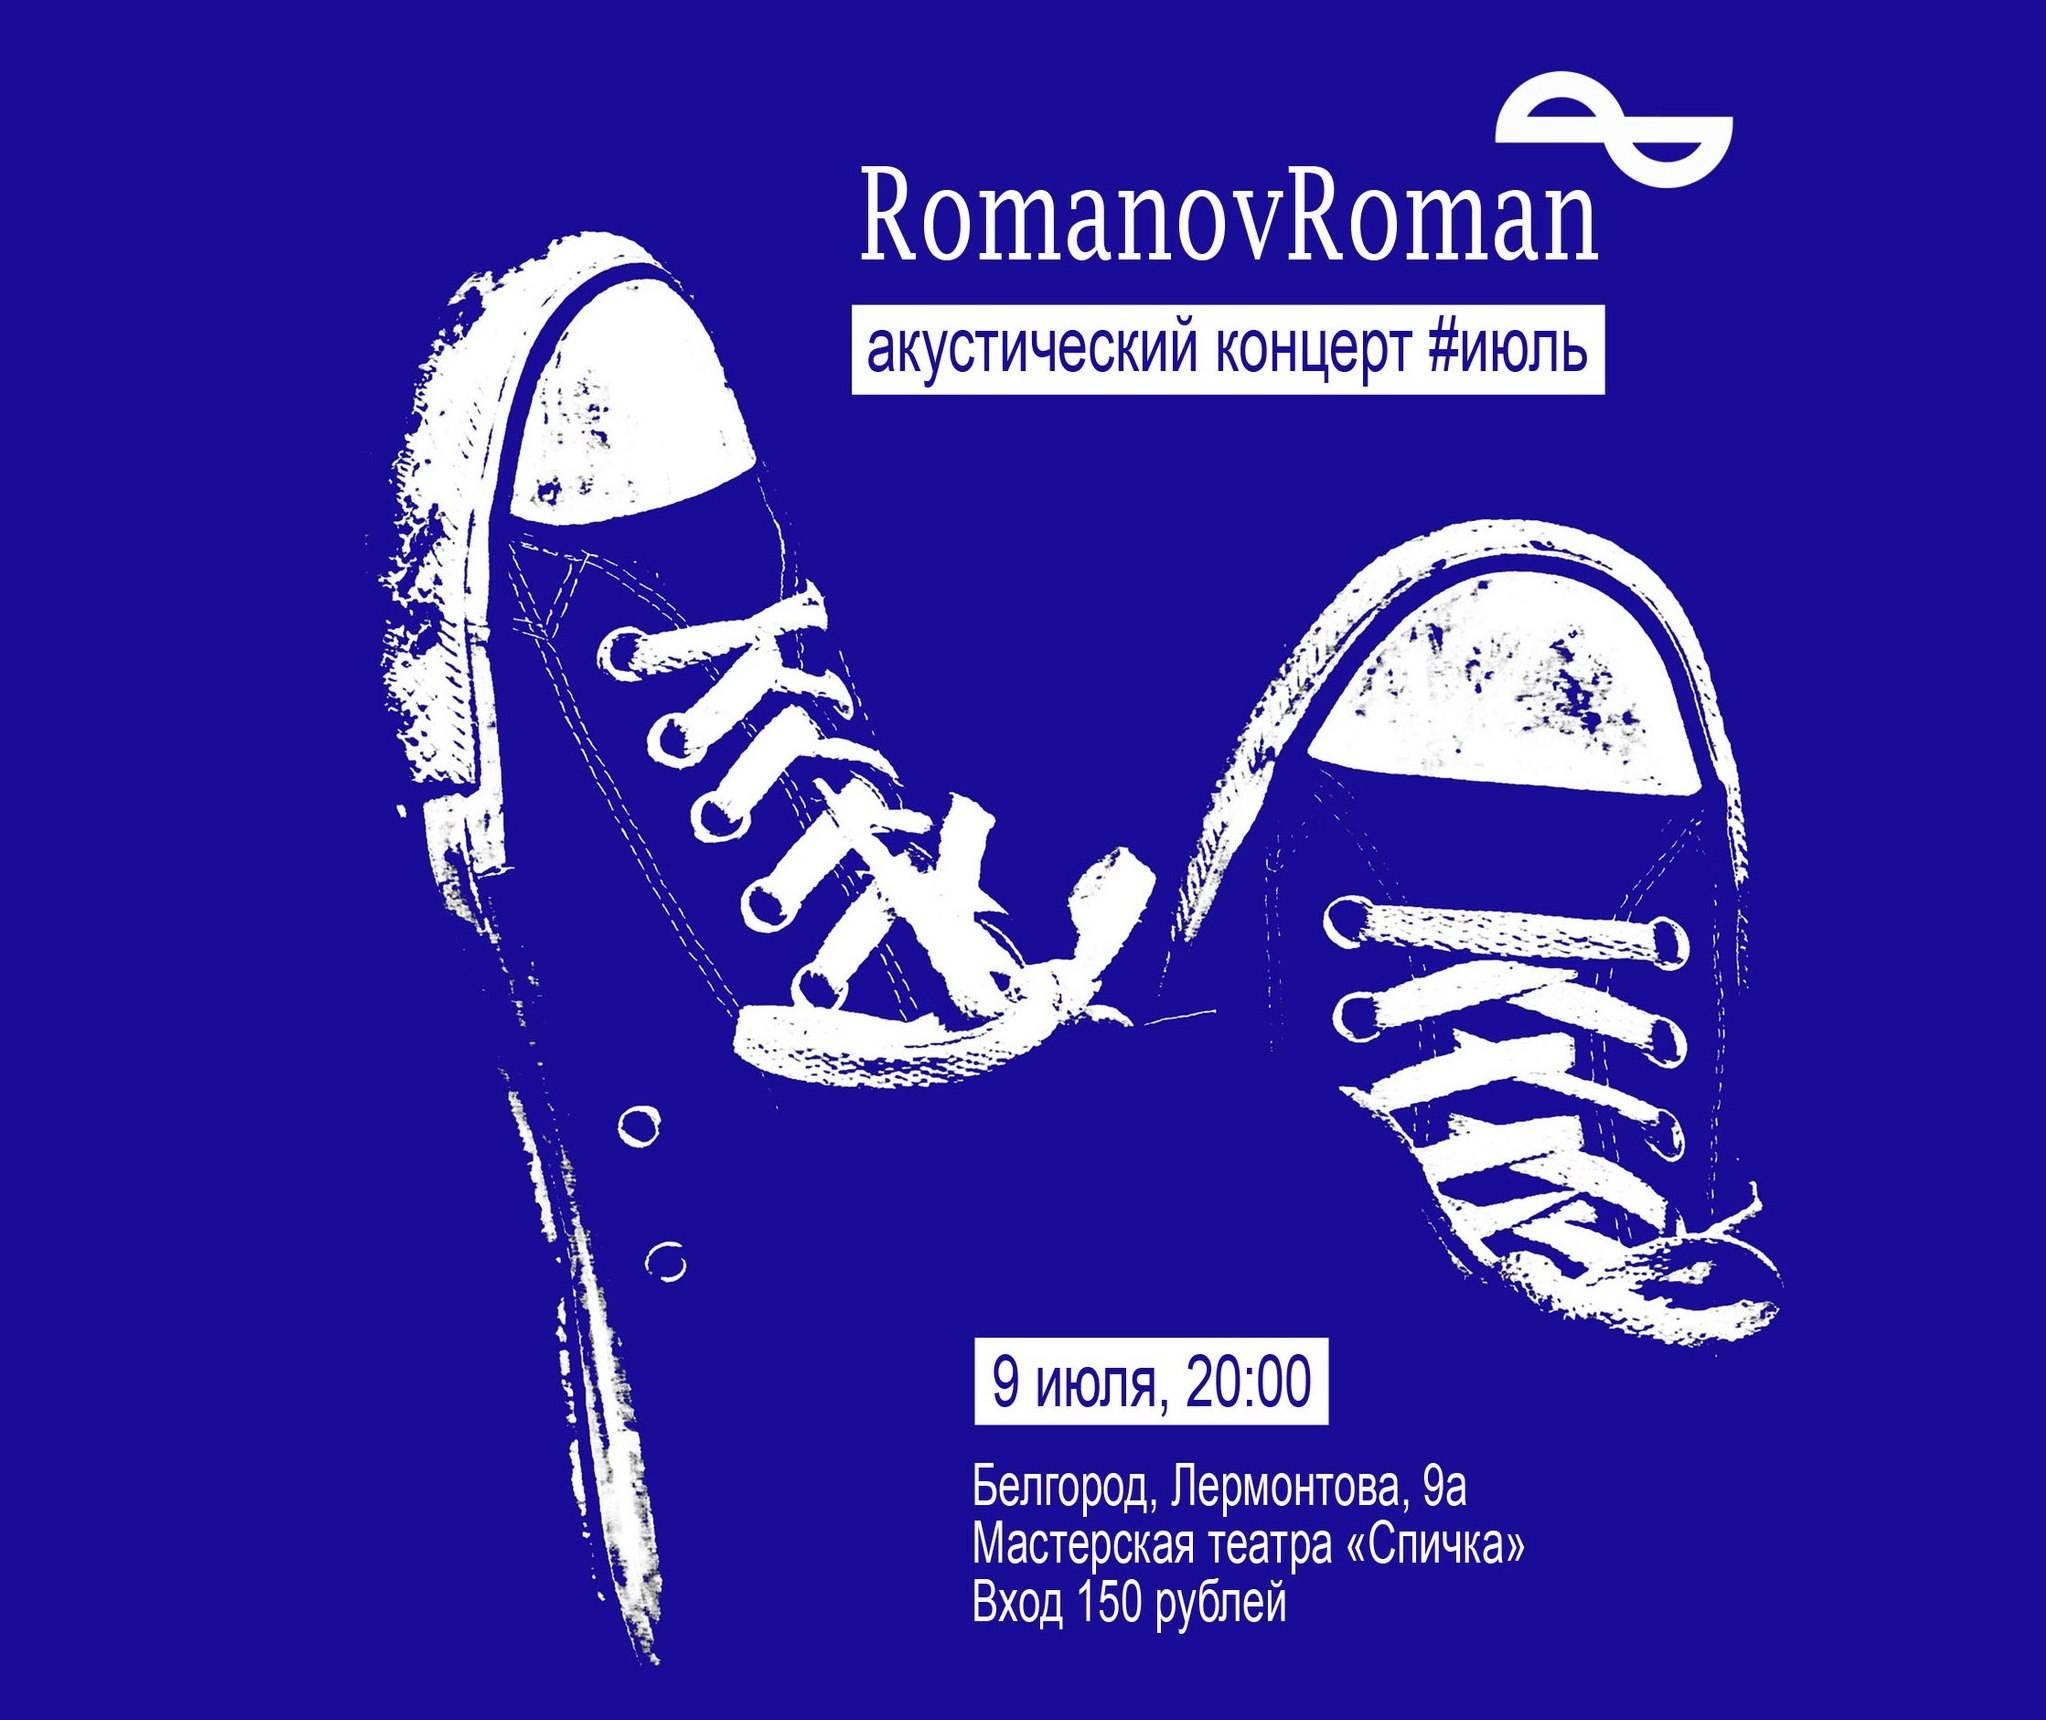 Акустический концерт RomanovRoman в Белгороде